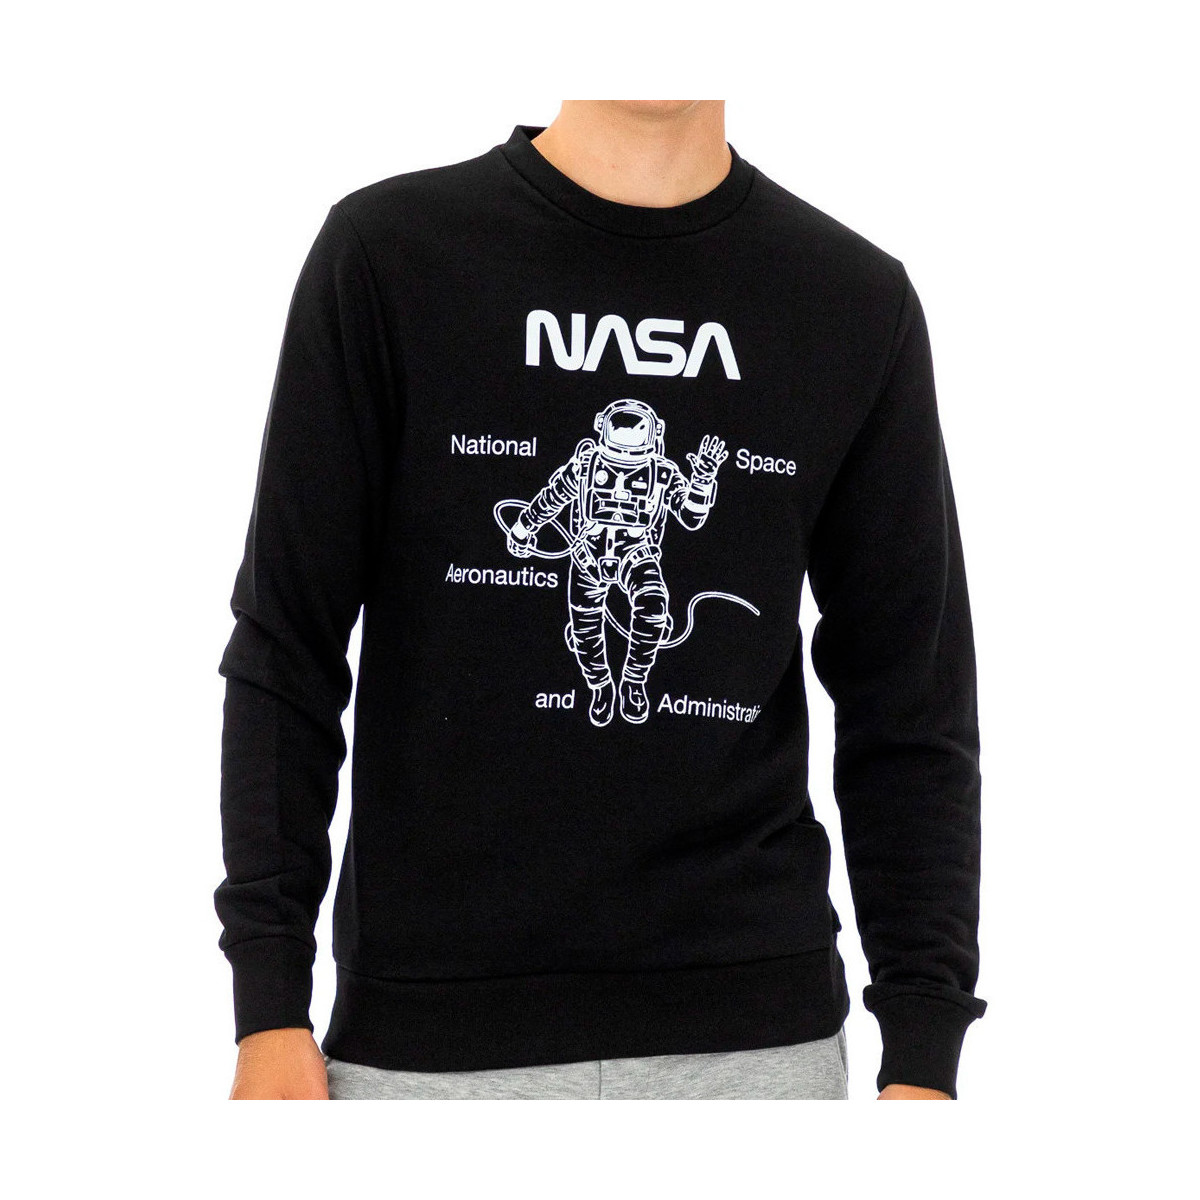 Vêtements Homme Sweats Nasa -NASA64S Noir